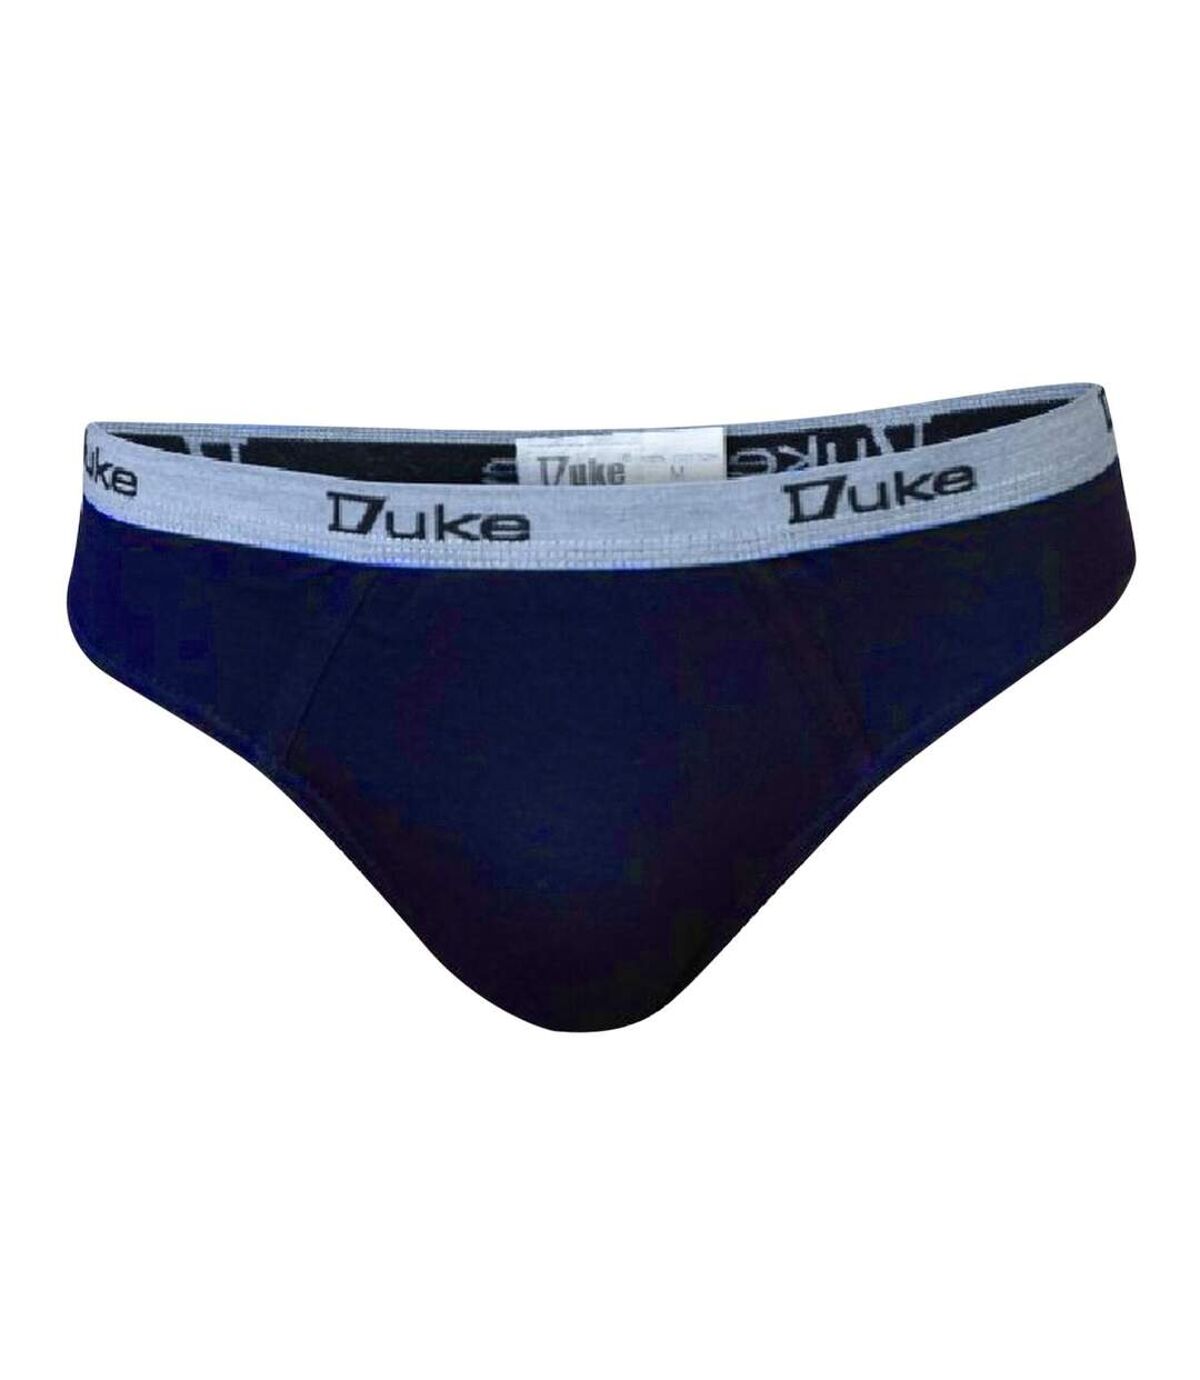 Duke London - Slips grande taille - Homme (Noir/gris/bleu marine) - UTDC107